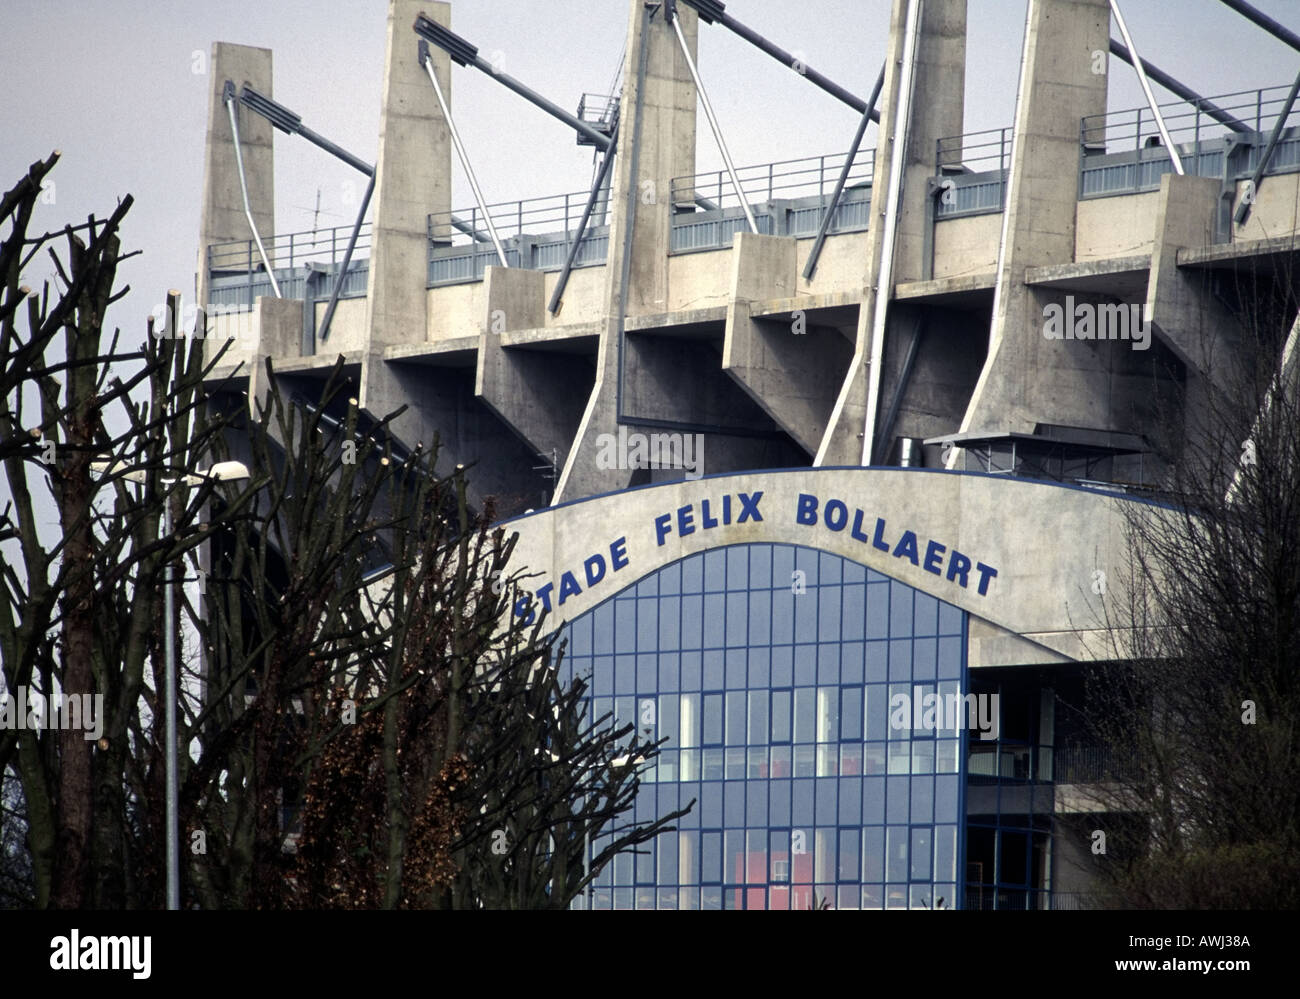 france nord pas de calais stade felix bollaert the football stadium of the lens football club Stock Photo